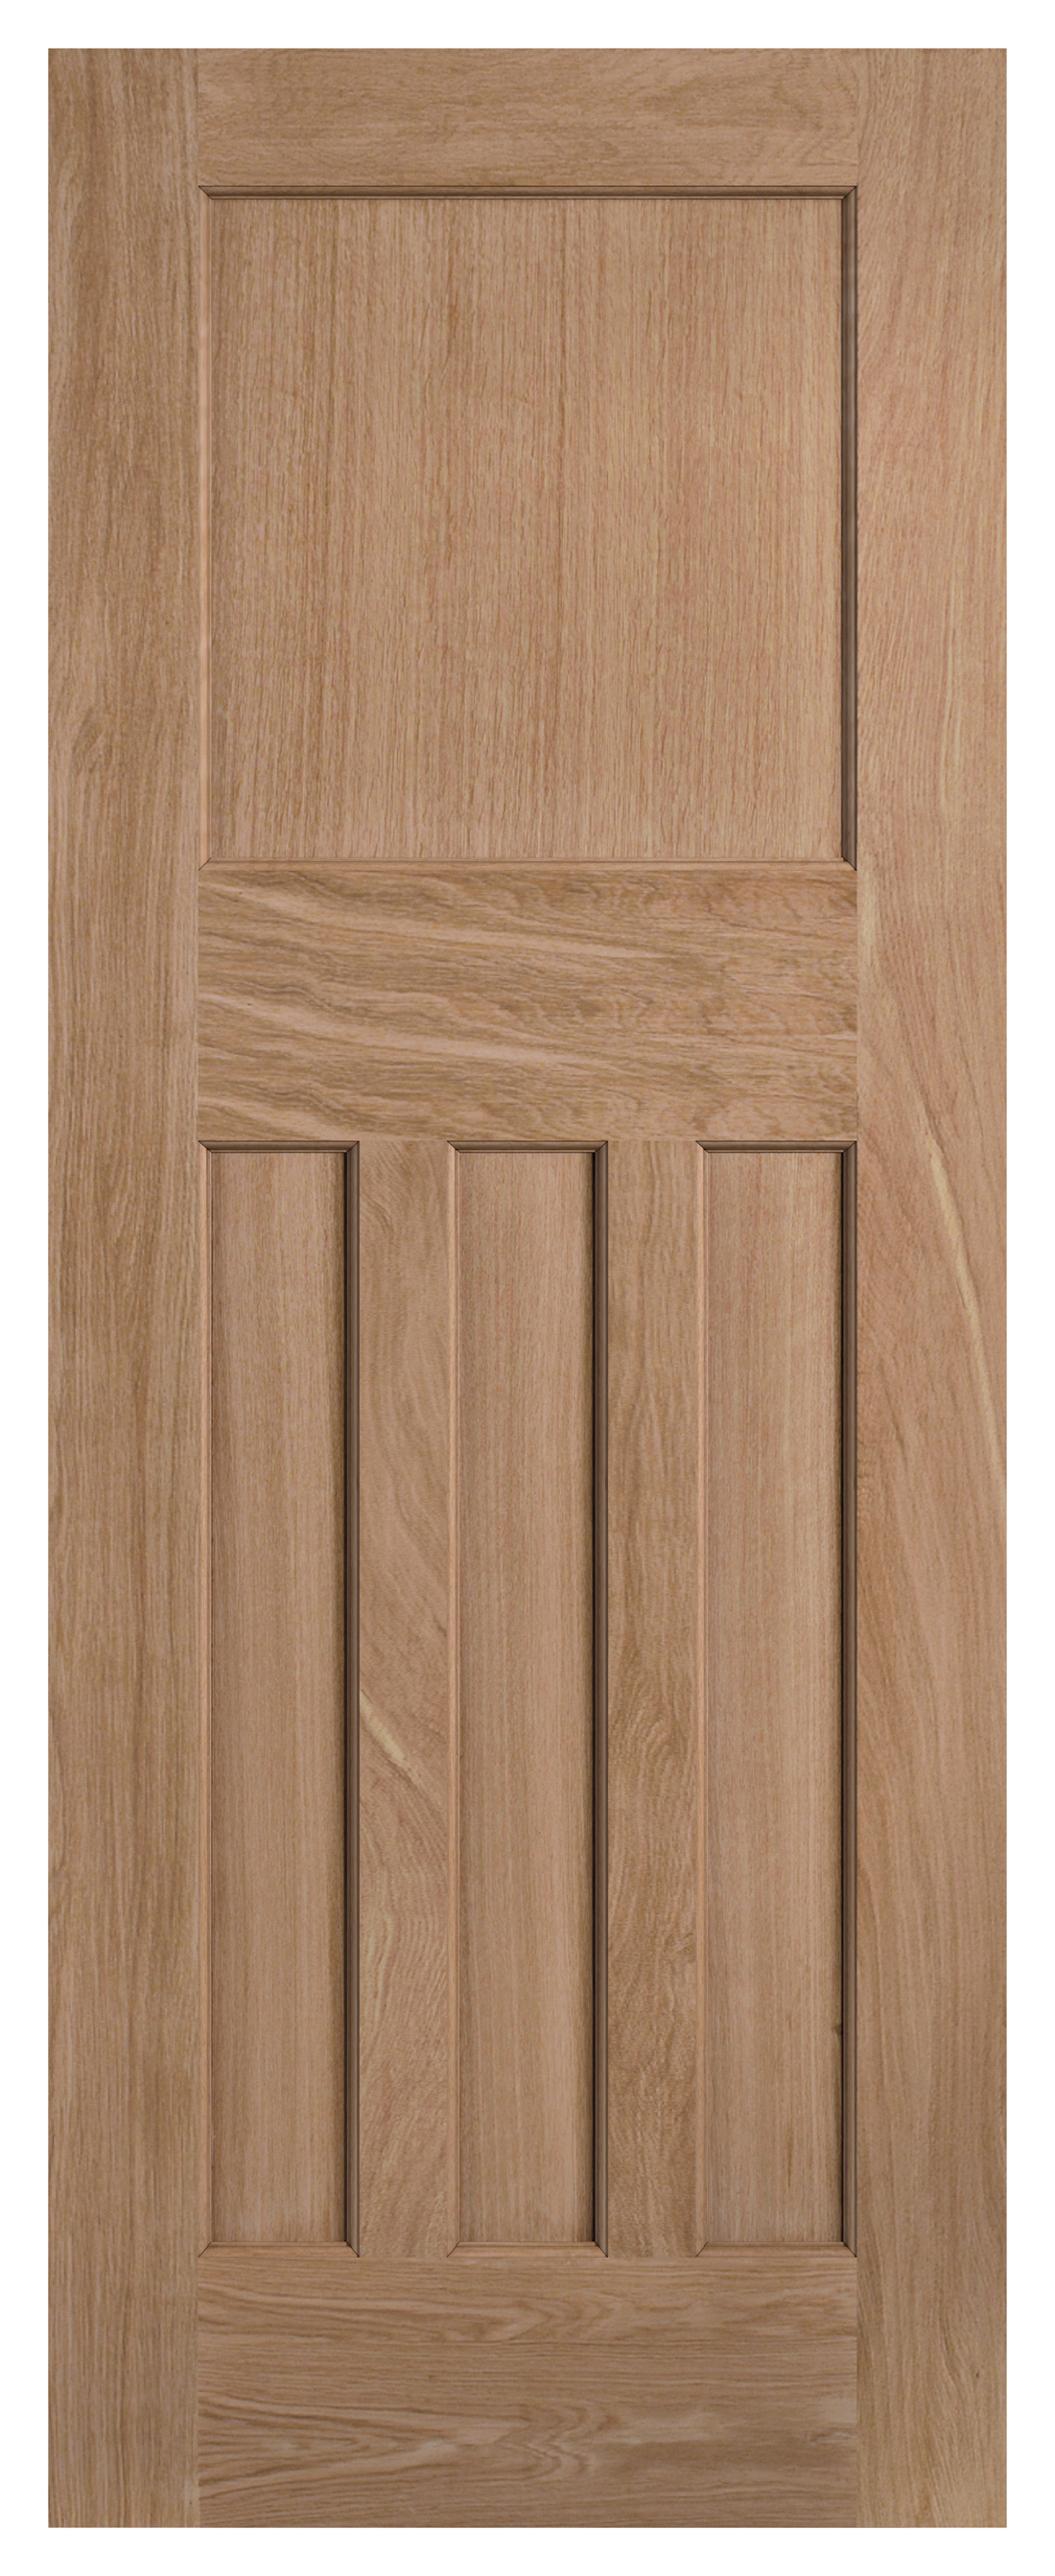 LPD Internal DX 30s Unfinished Oak Door - 2032mm